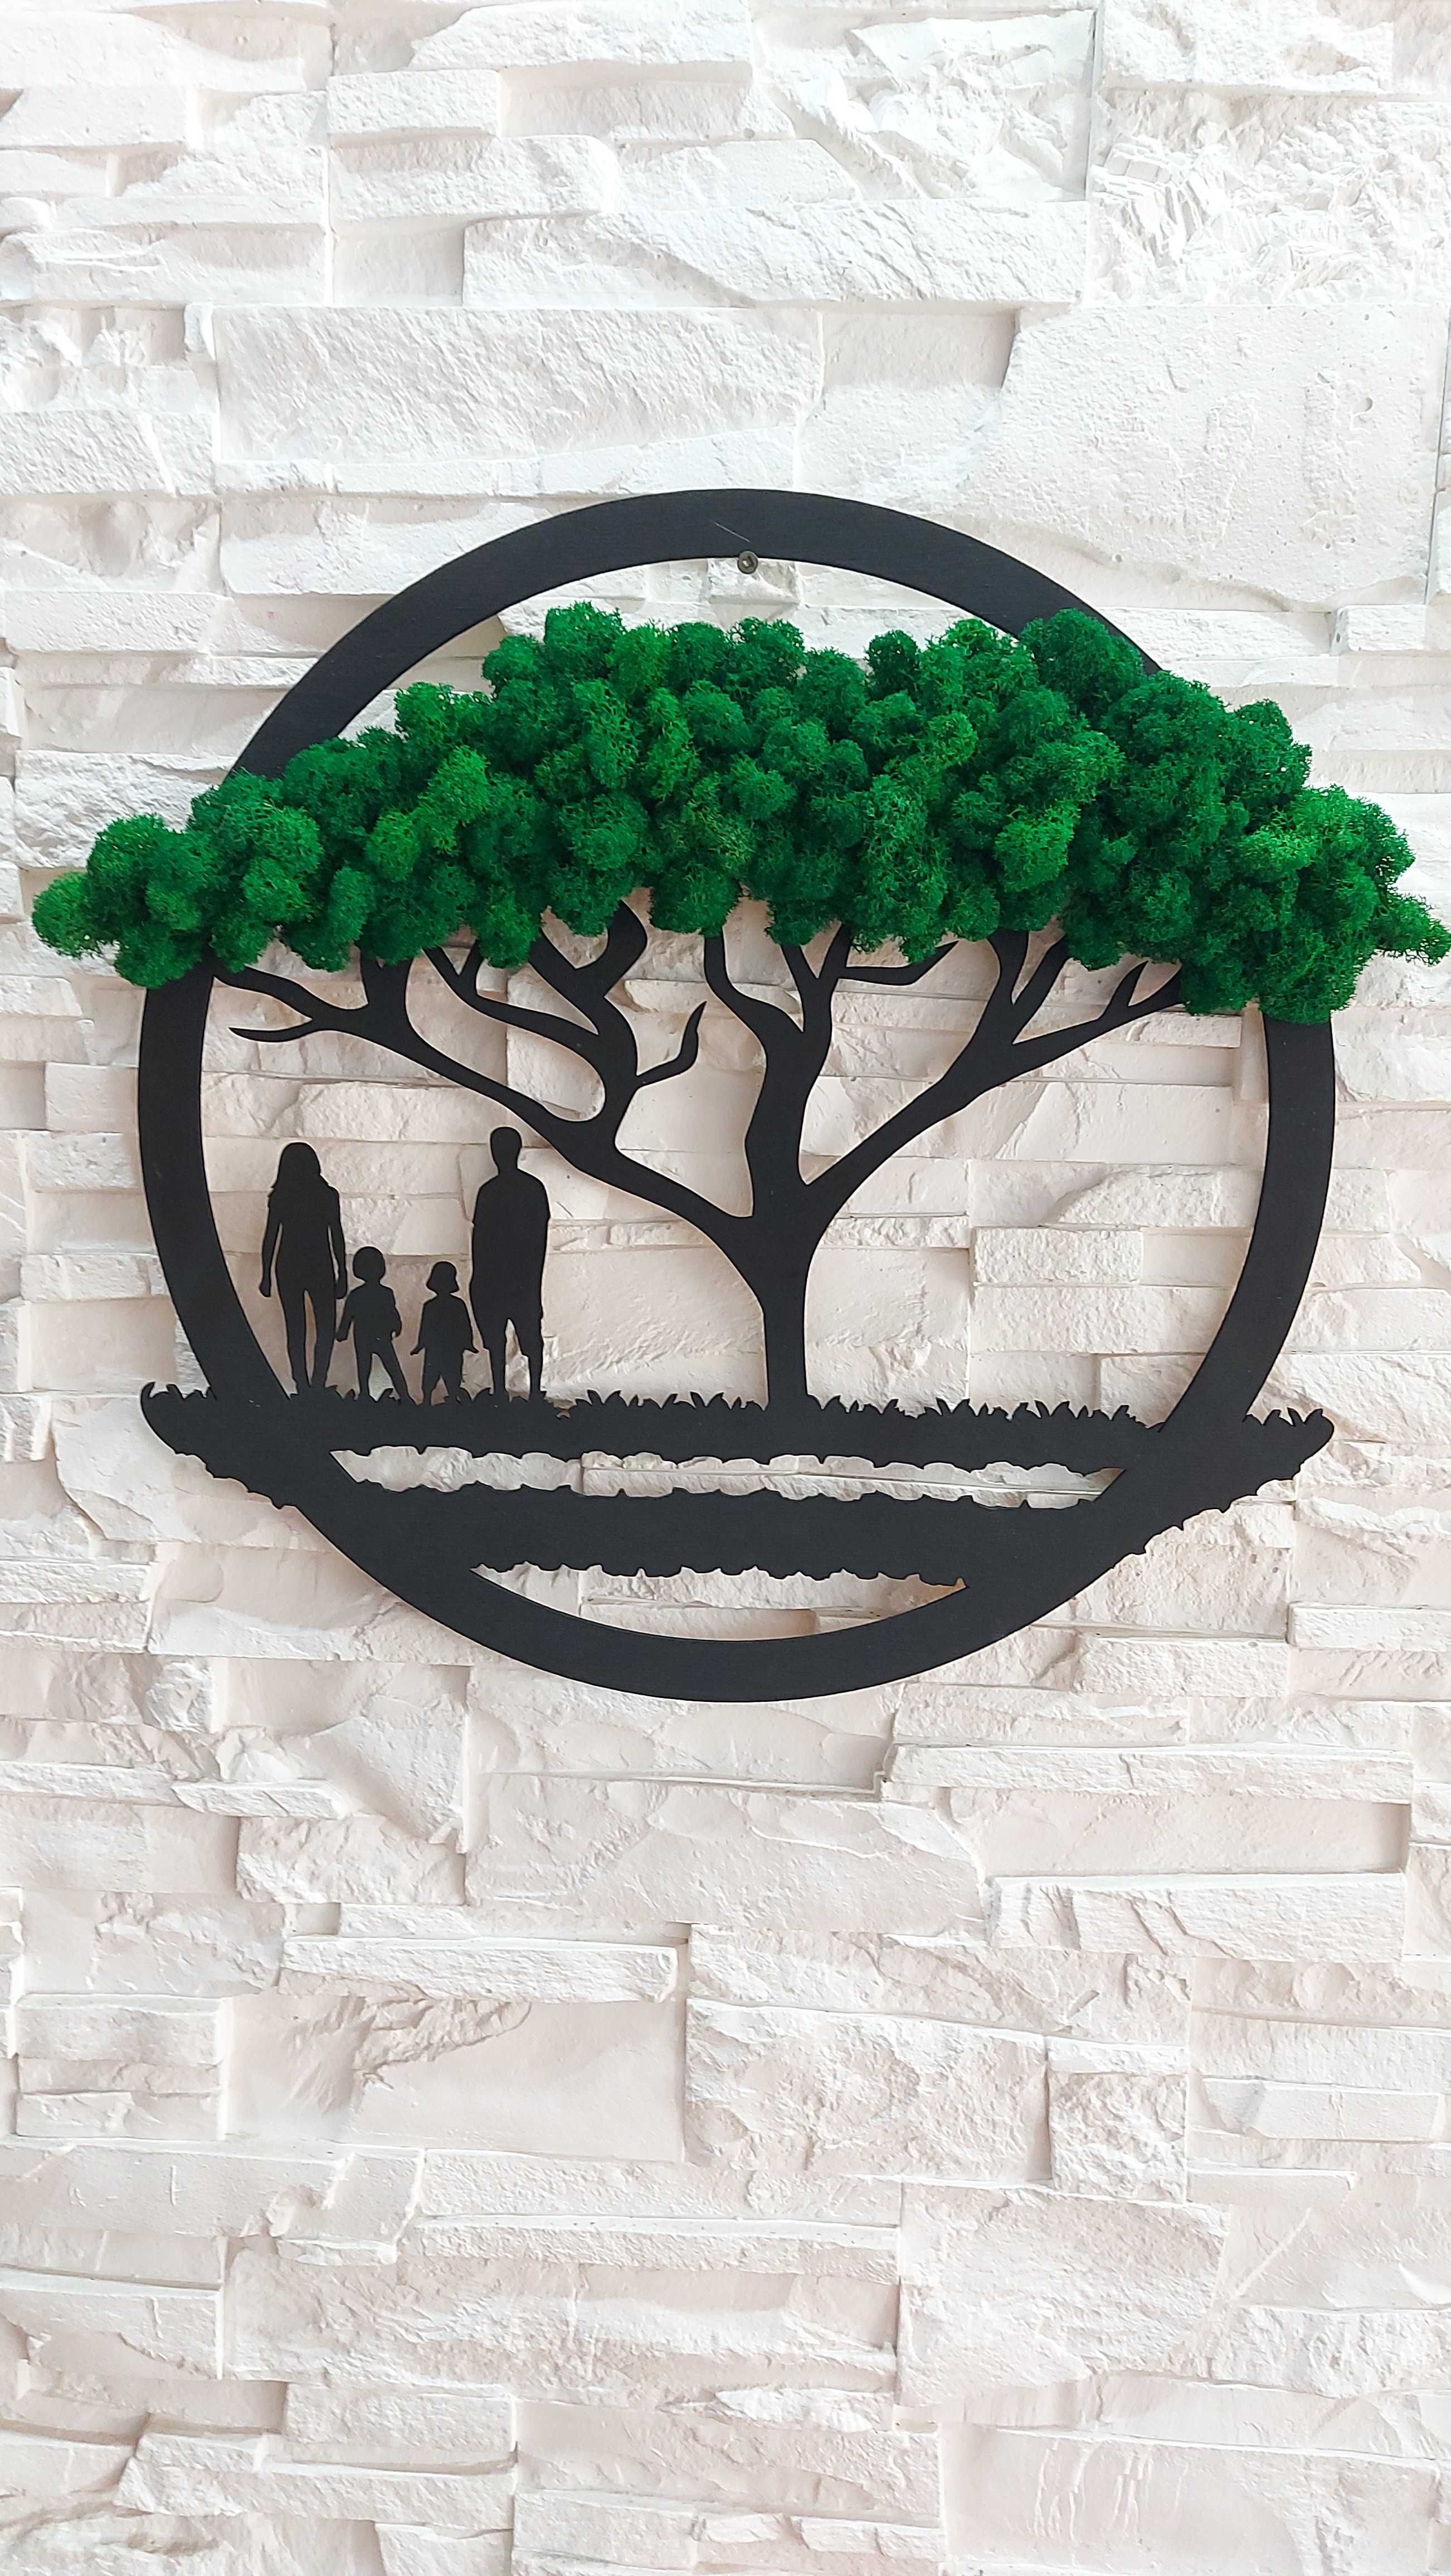 Obraz 3d, drzewo życia, rodzina, mech chrobotek 40cm